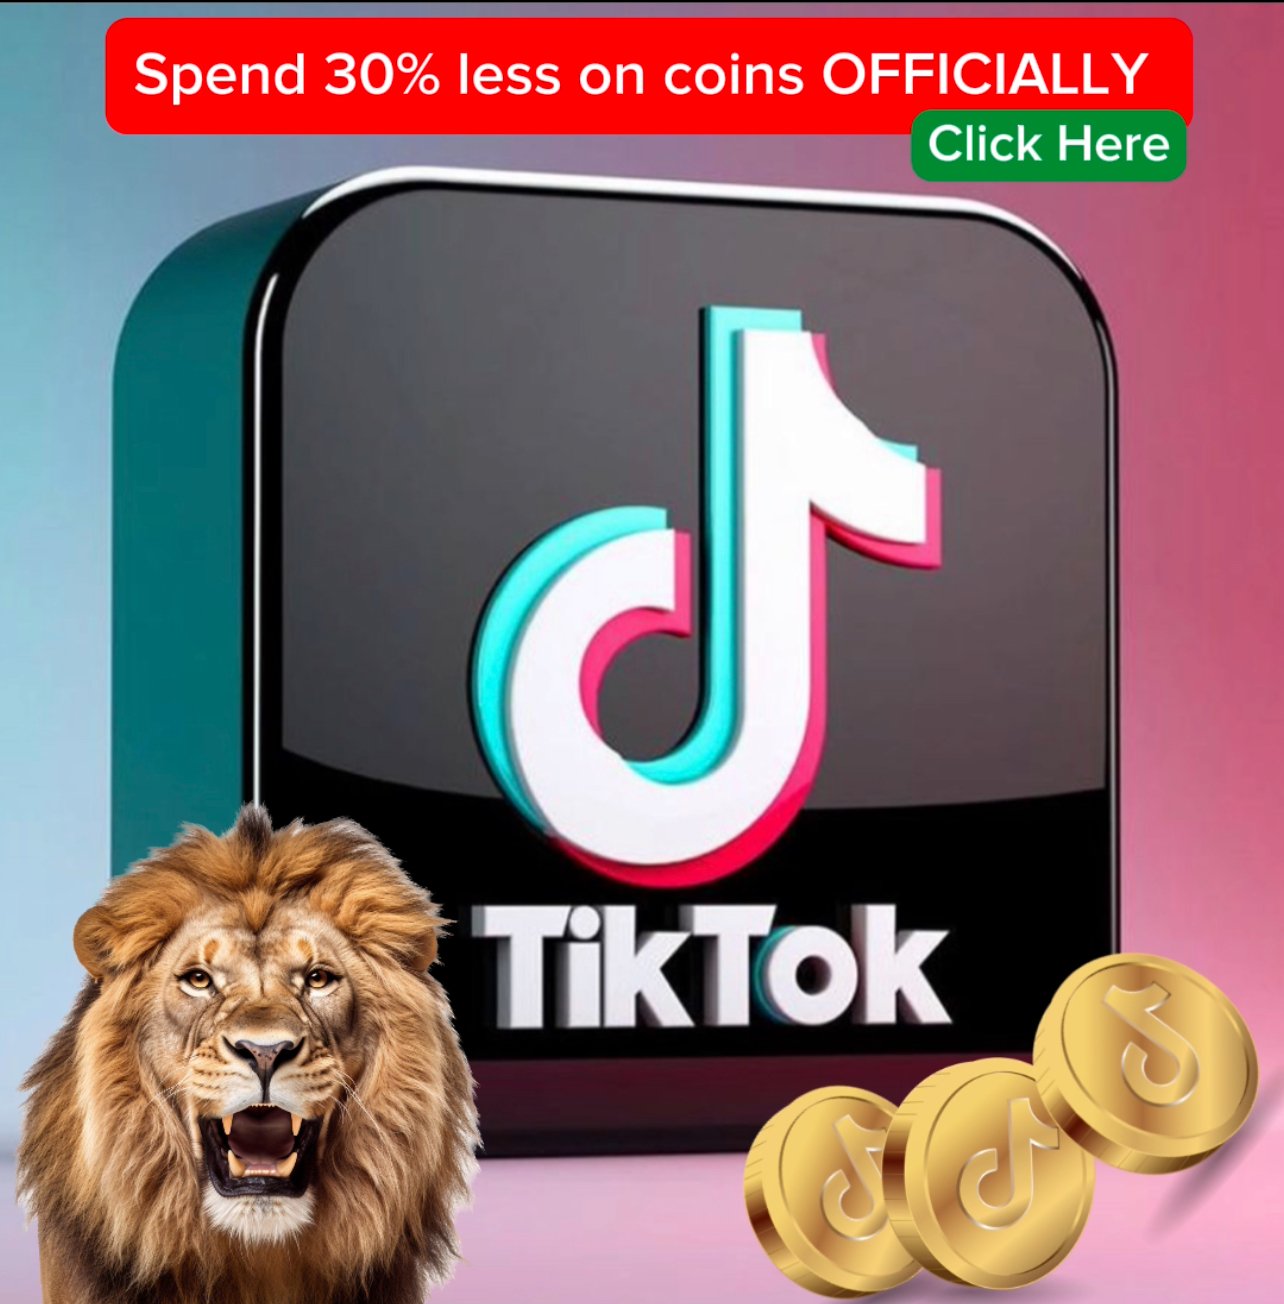 upto 30% discont tiktok buy coin officially